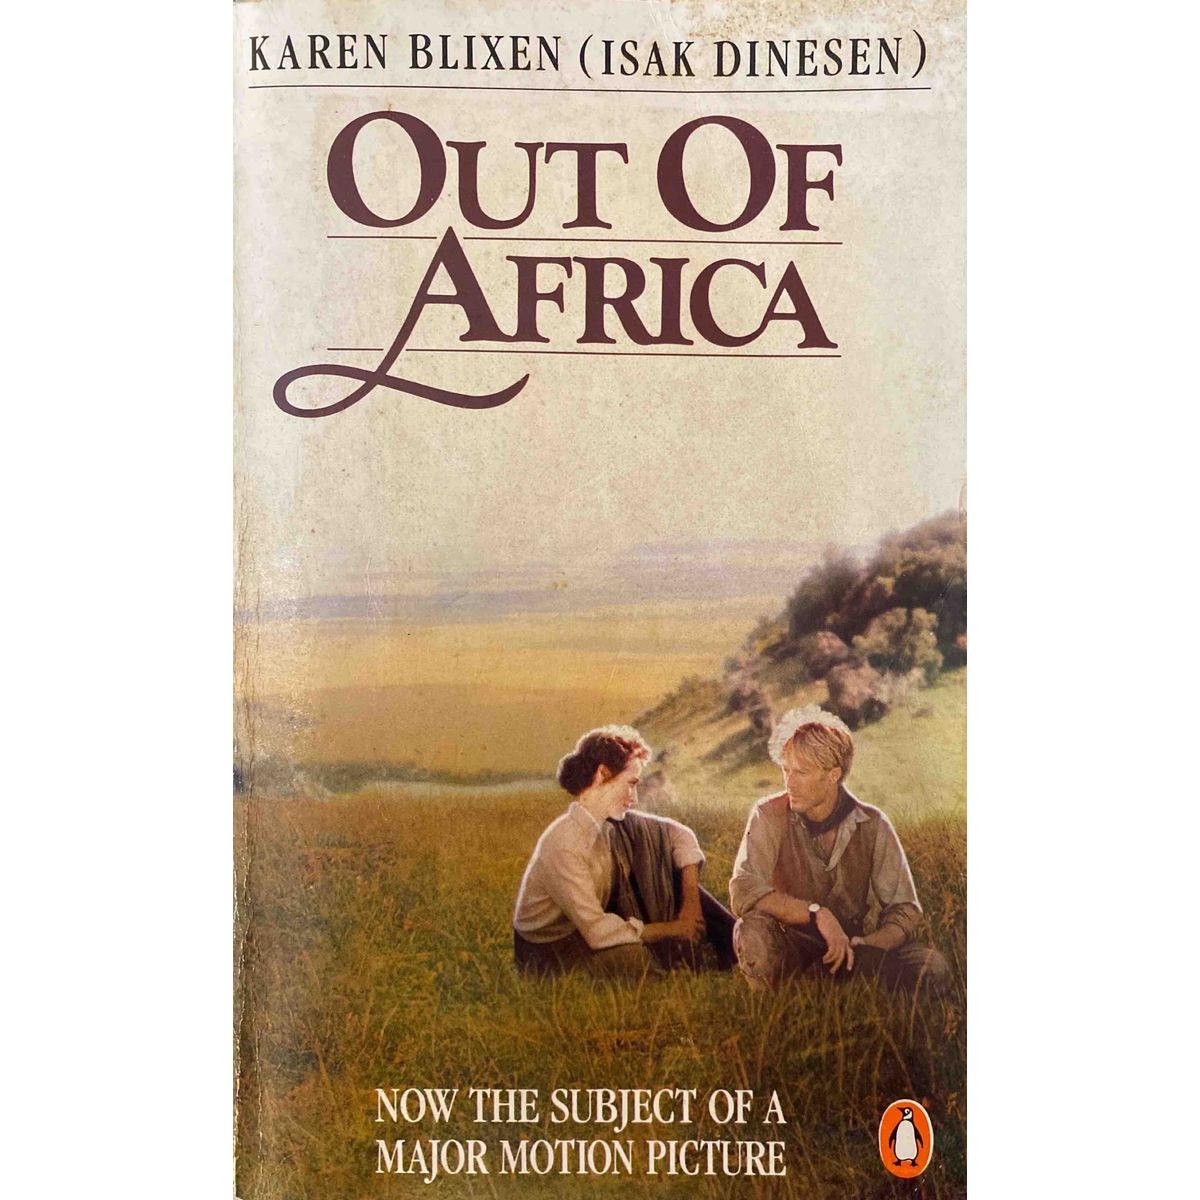 ISBN: 9780140105544 / 0140105549 - Out of Africa by Karen Blixen [1988]